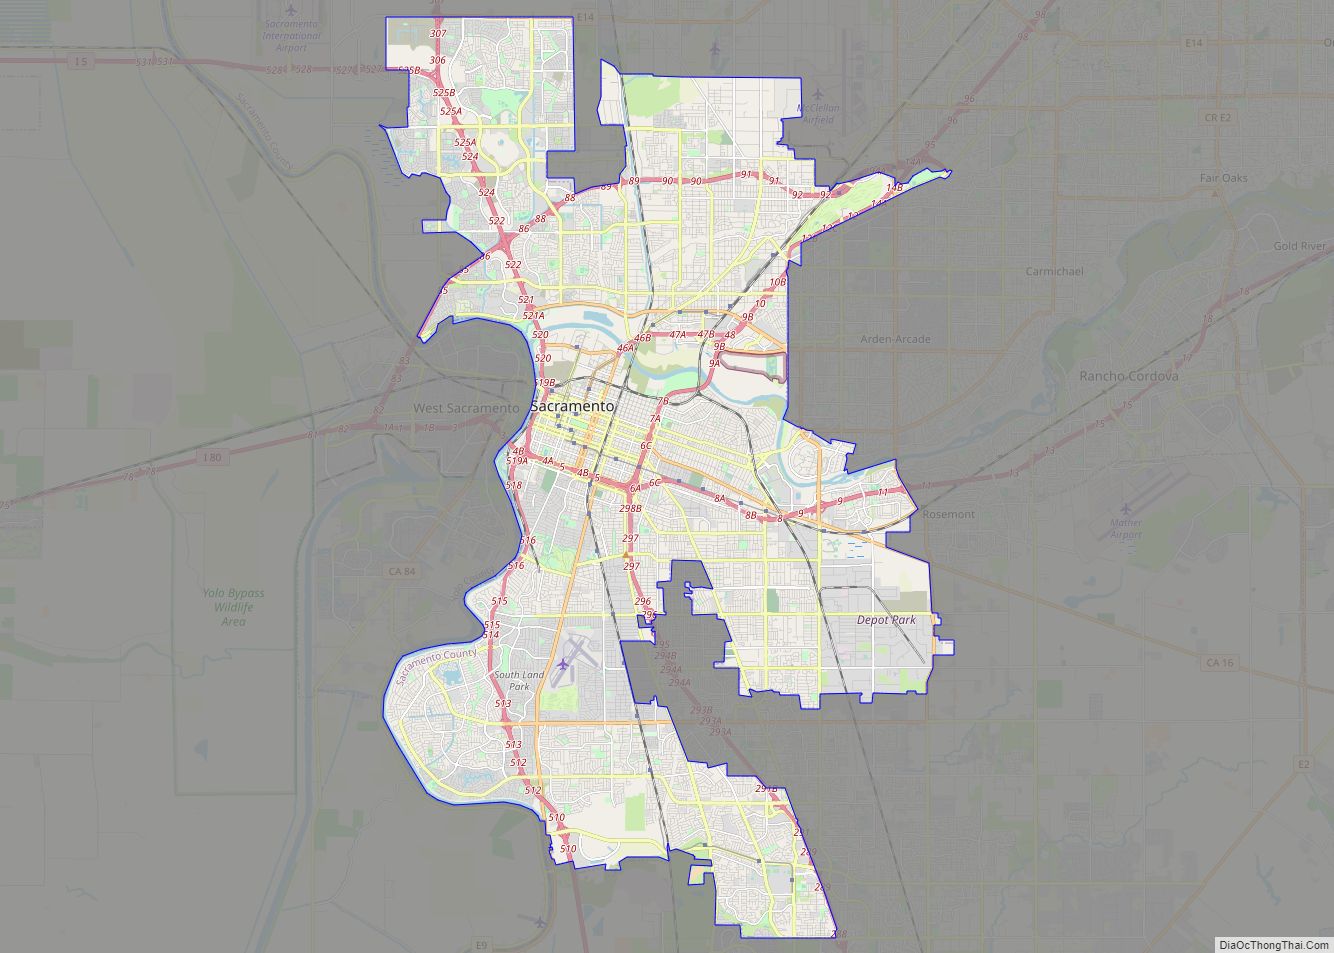 Map of Sacramento city